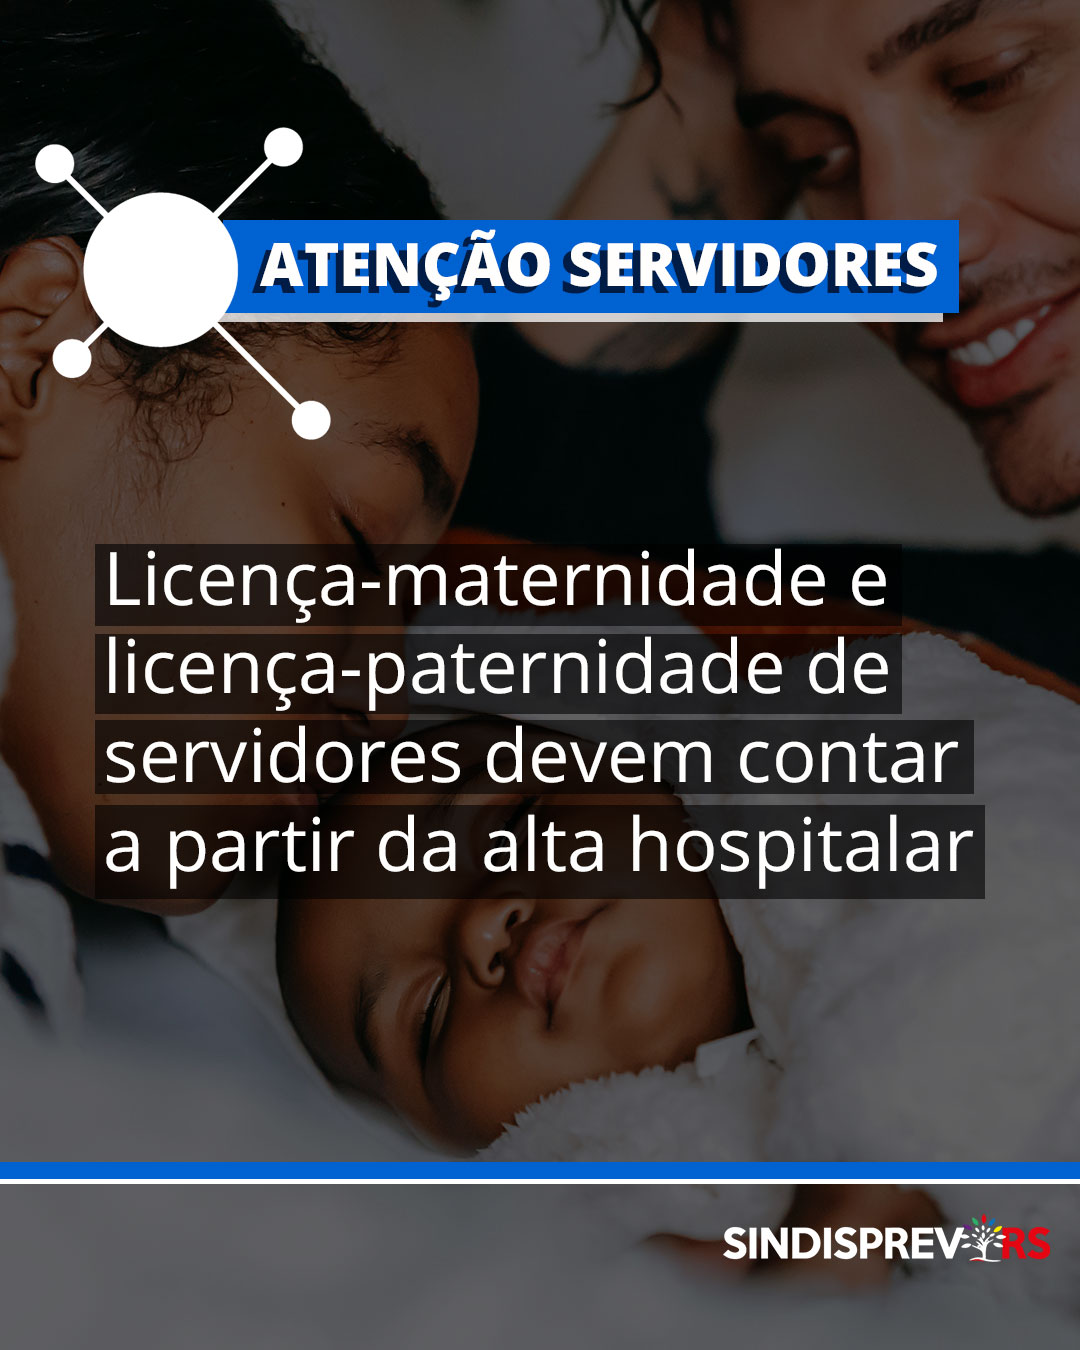  Licença-maternidade e licença-paternidade de servidores devem contar a partir da alta hospitalar